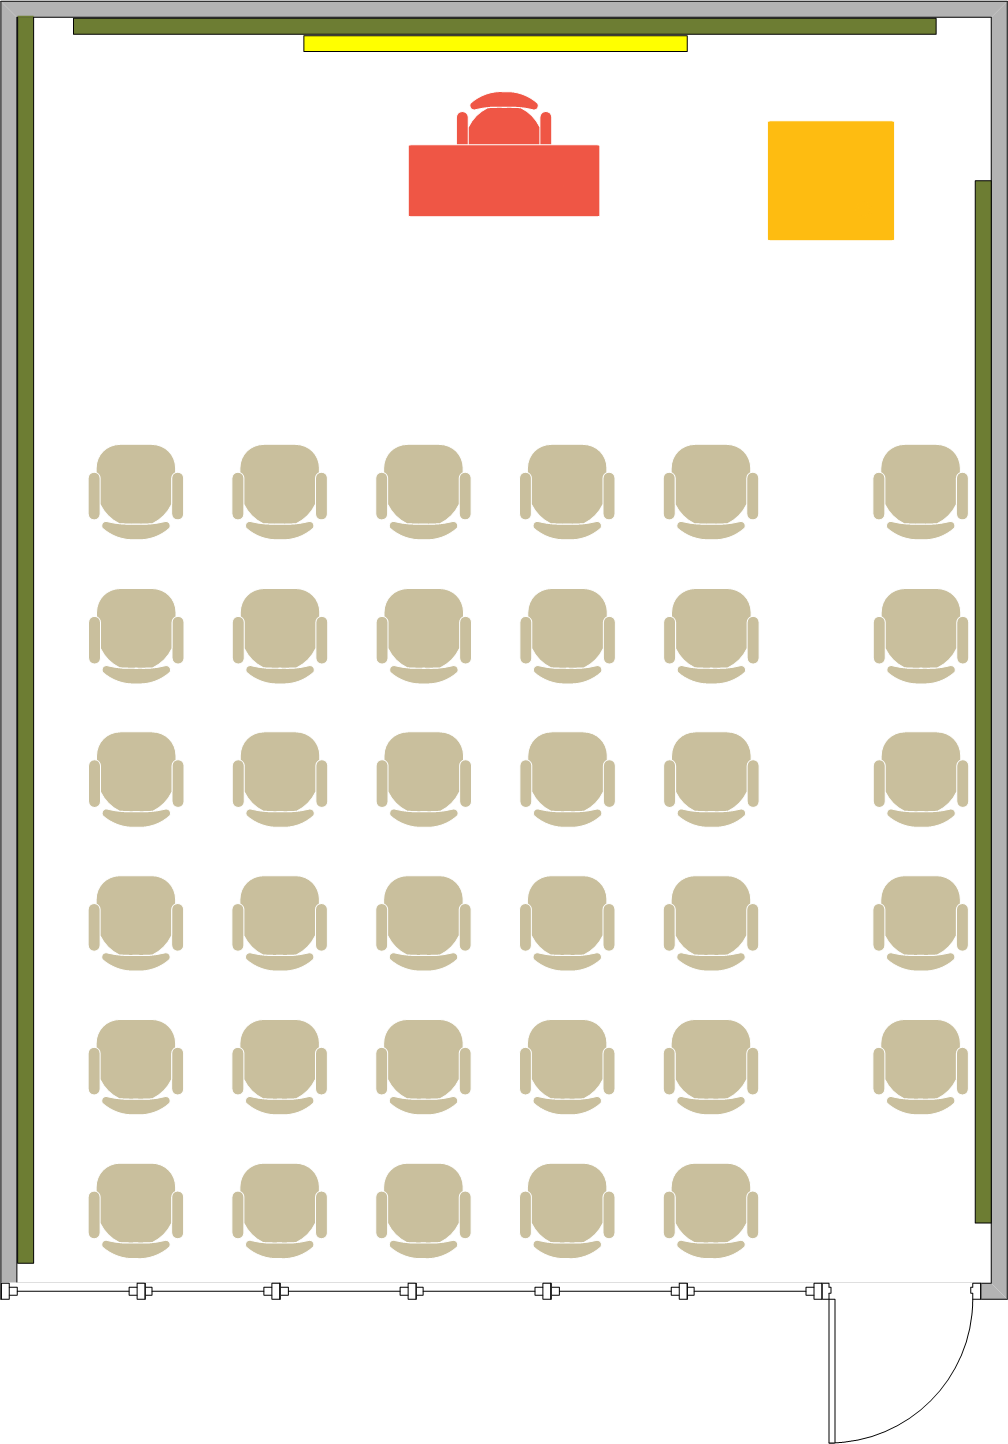 Phelps Hall - 1444 Seating Chart